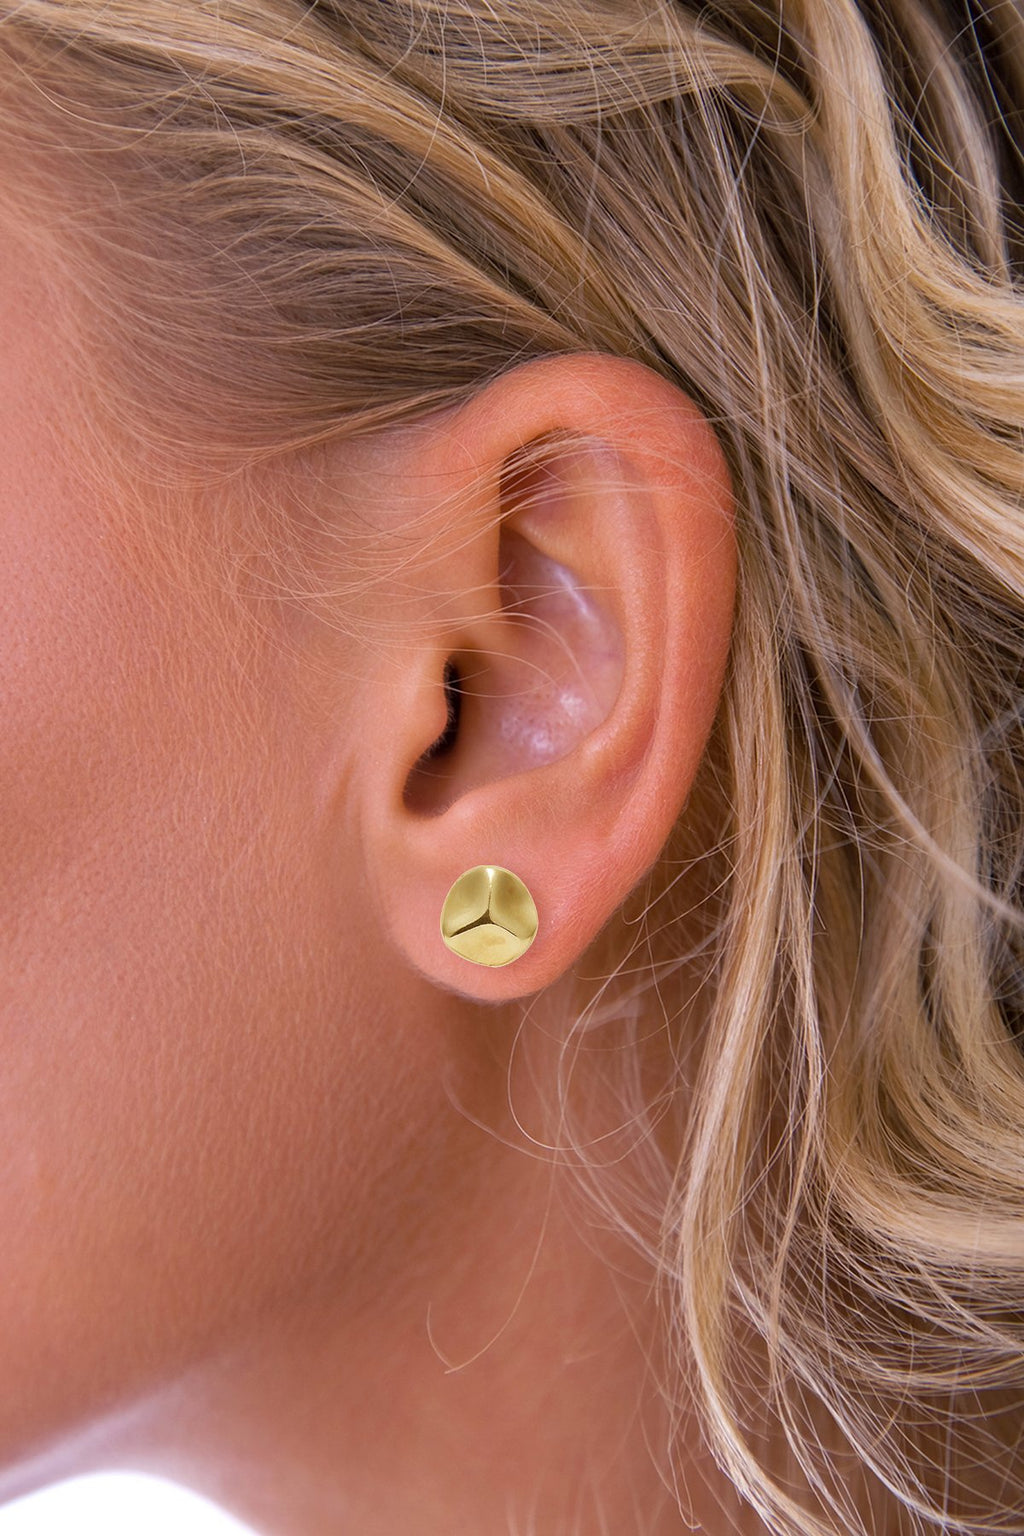 Gold Trefoil Stud Earrings